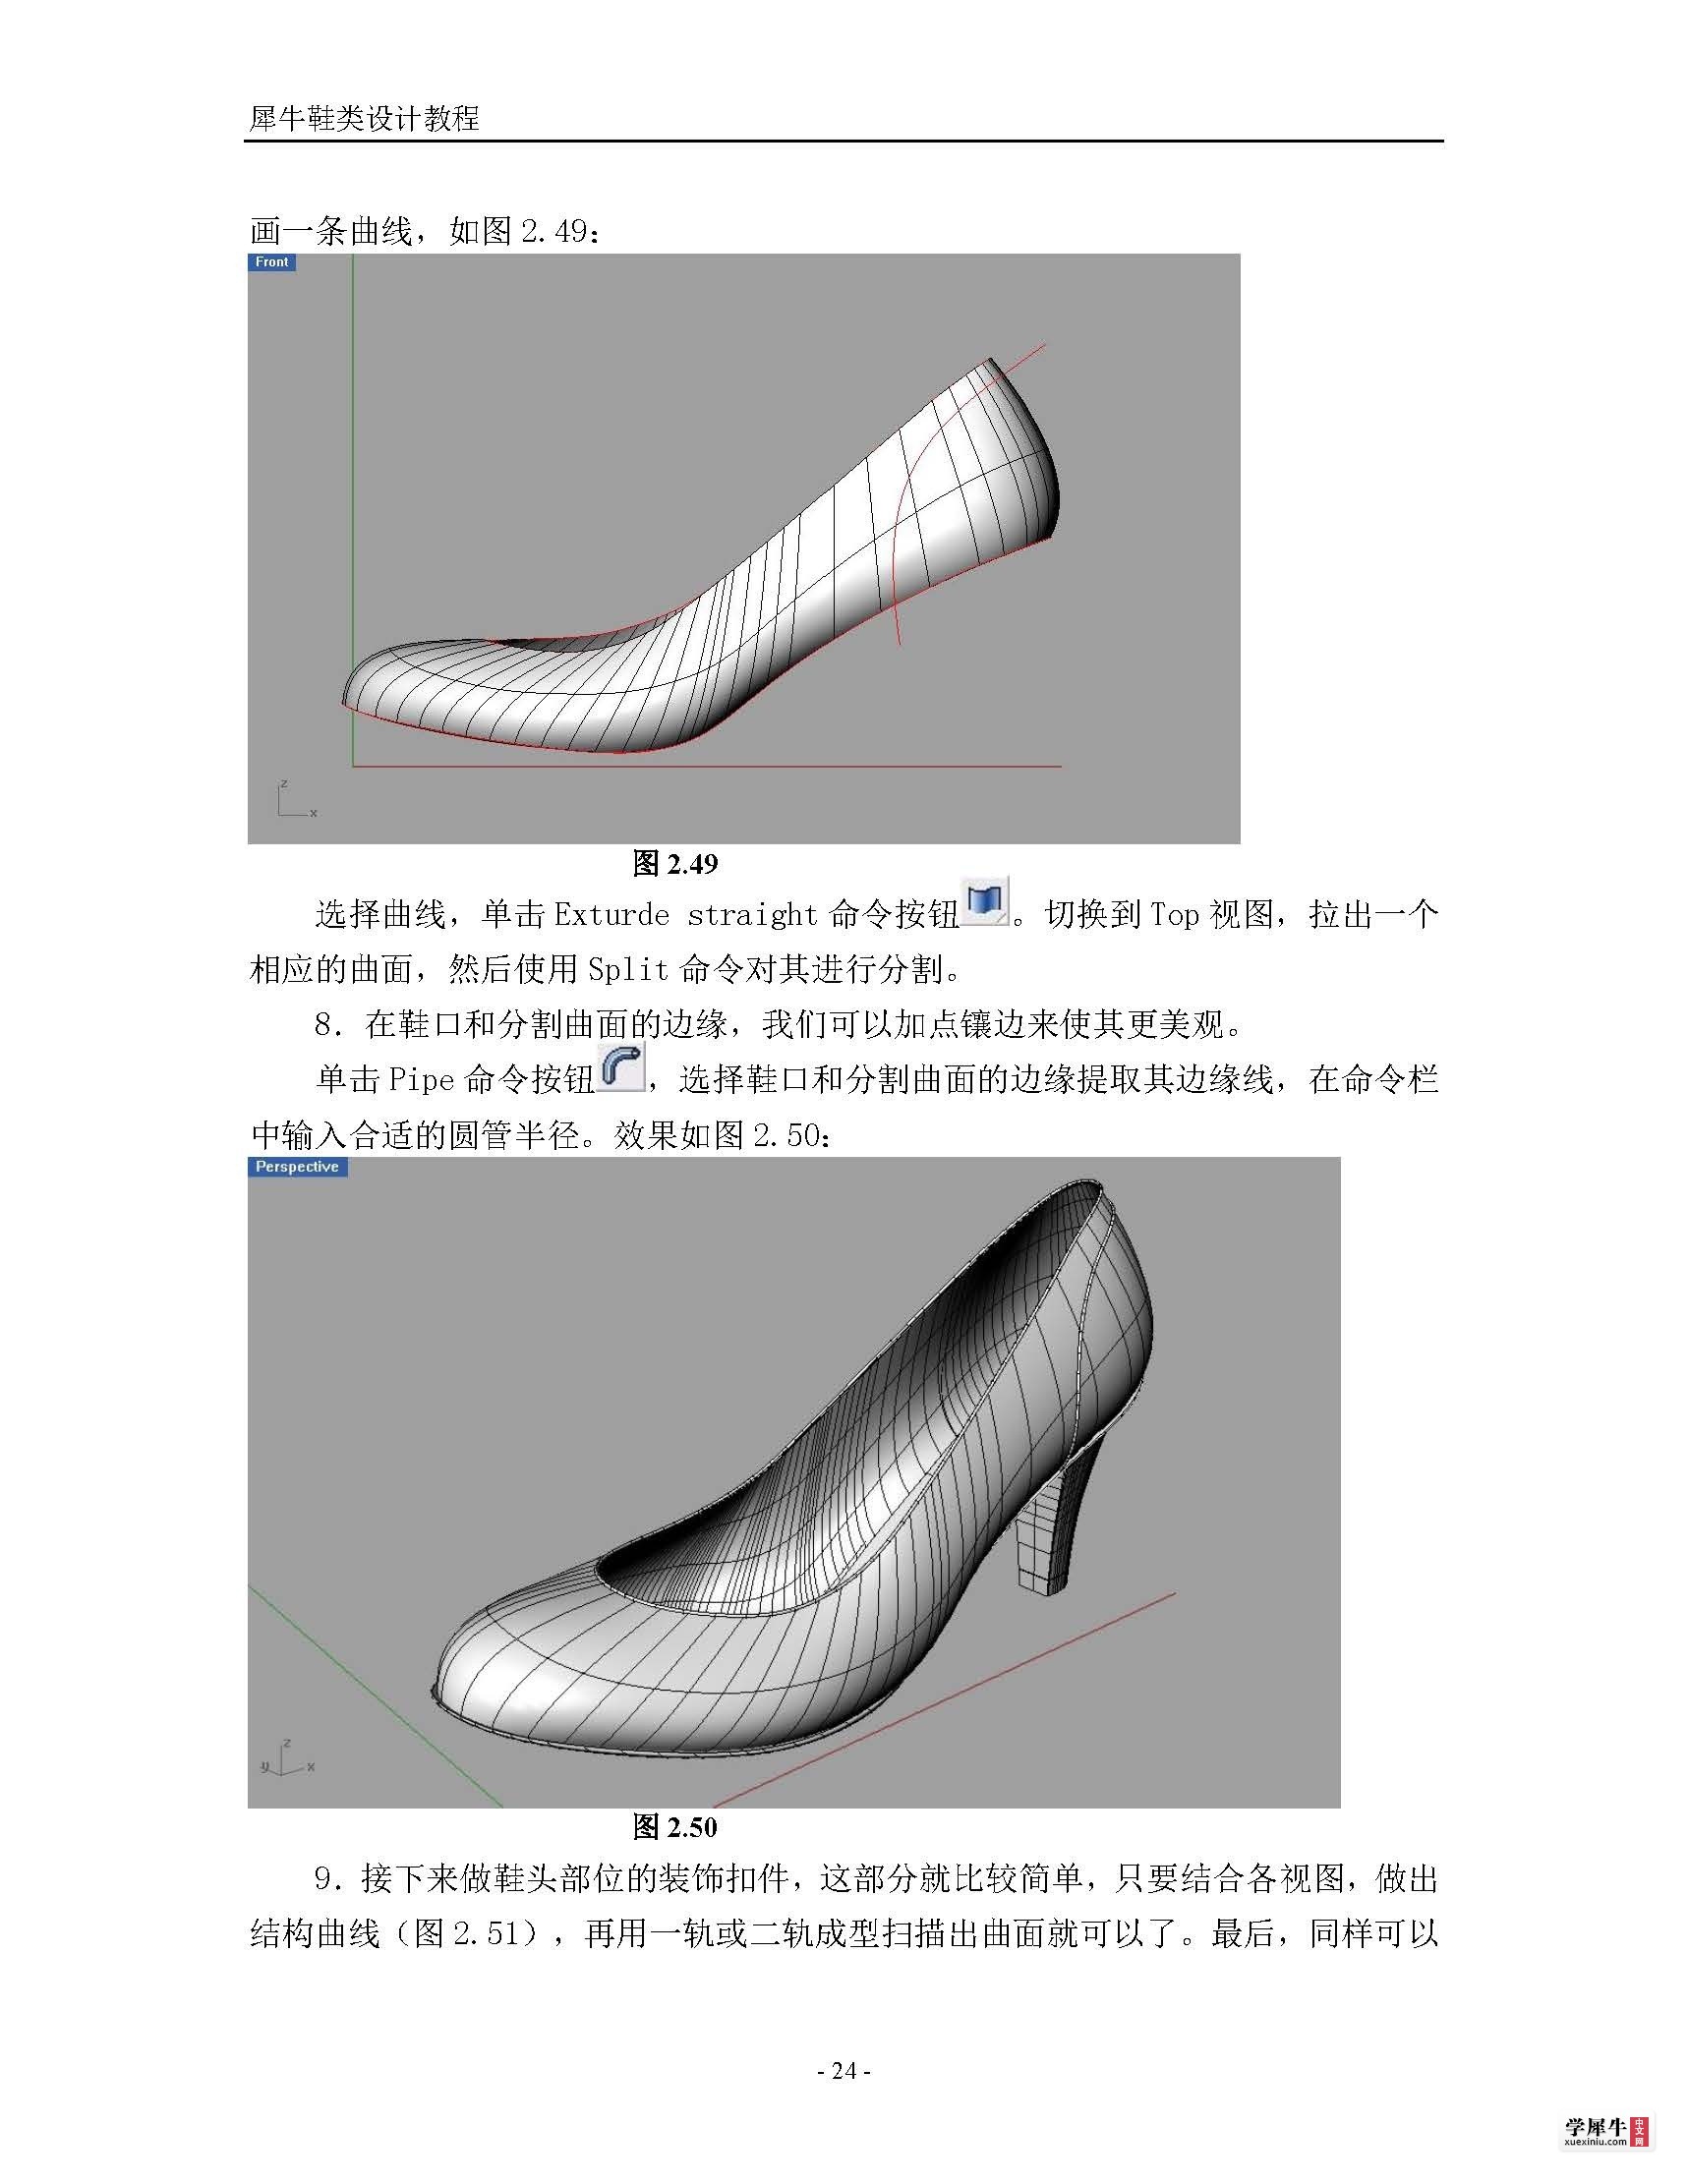 犀牛鞋类建模终极教程(转)_页面_24.jpg